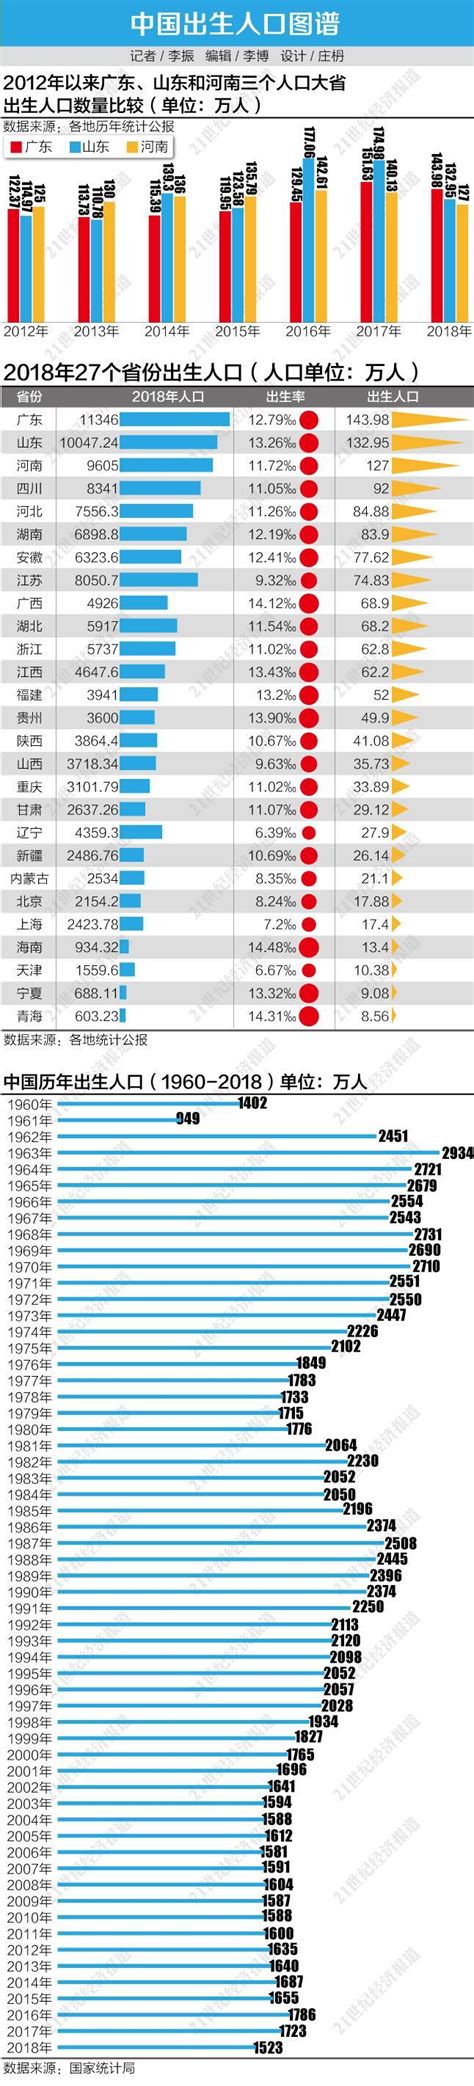 2018年出生人口图谱:广东"最能生" 东北垫底